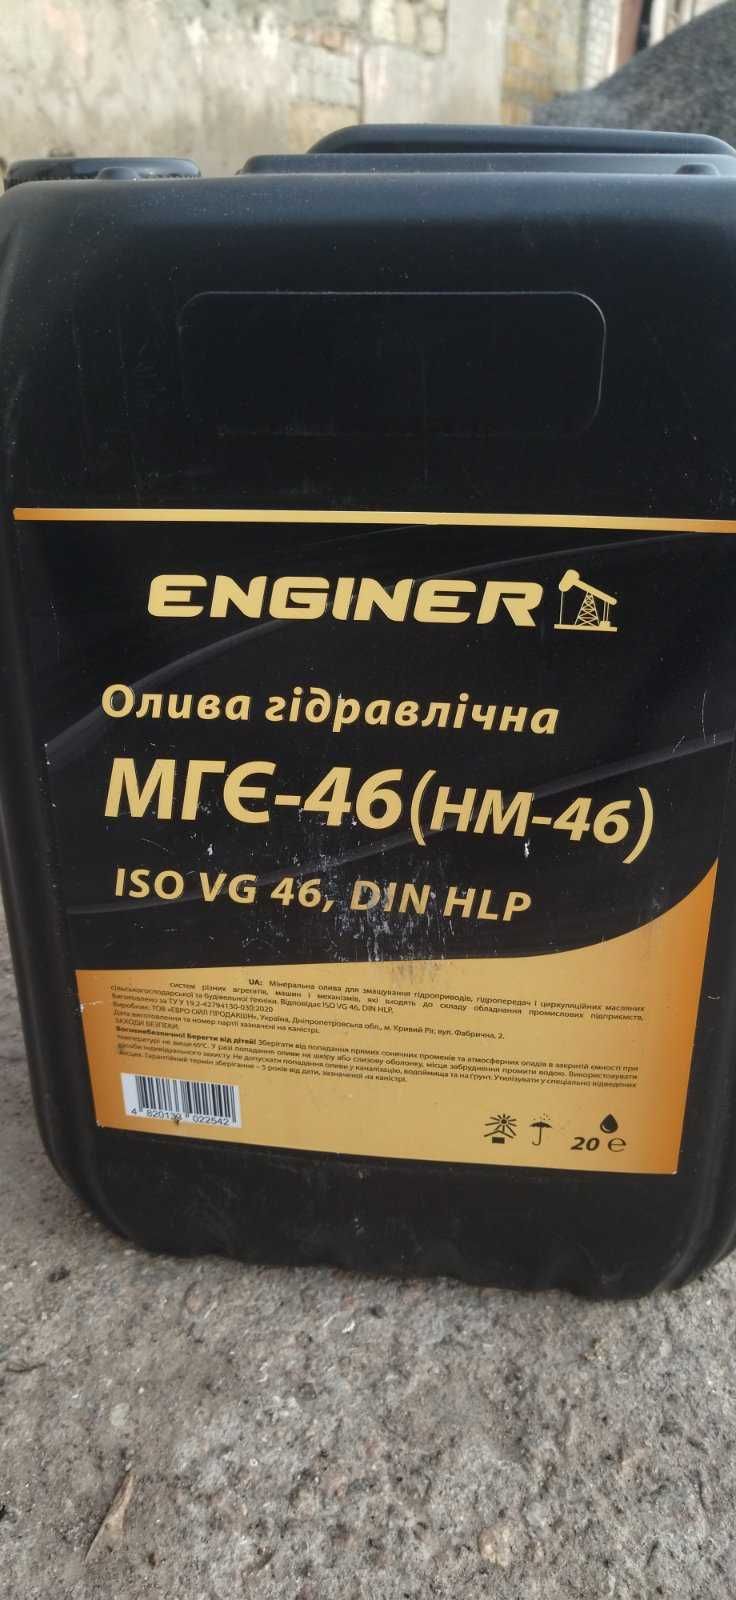 ПРОДАМ МАСЛО гидравлическое МГЕ-46 новое